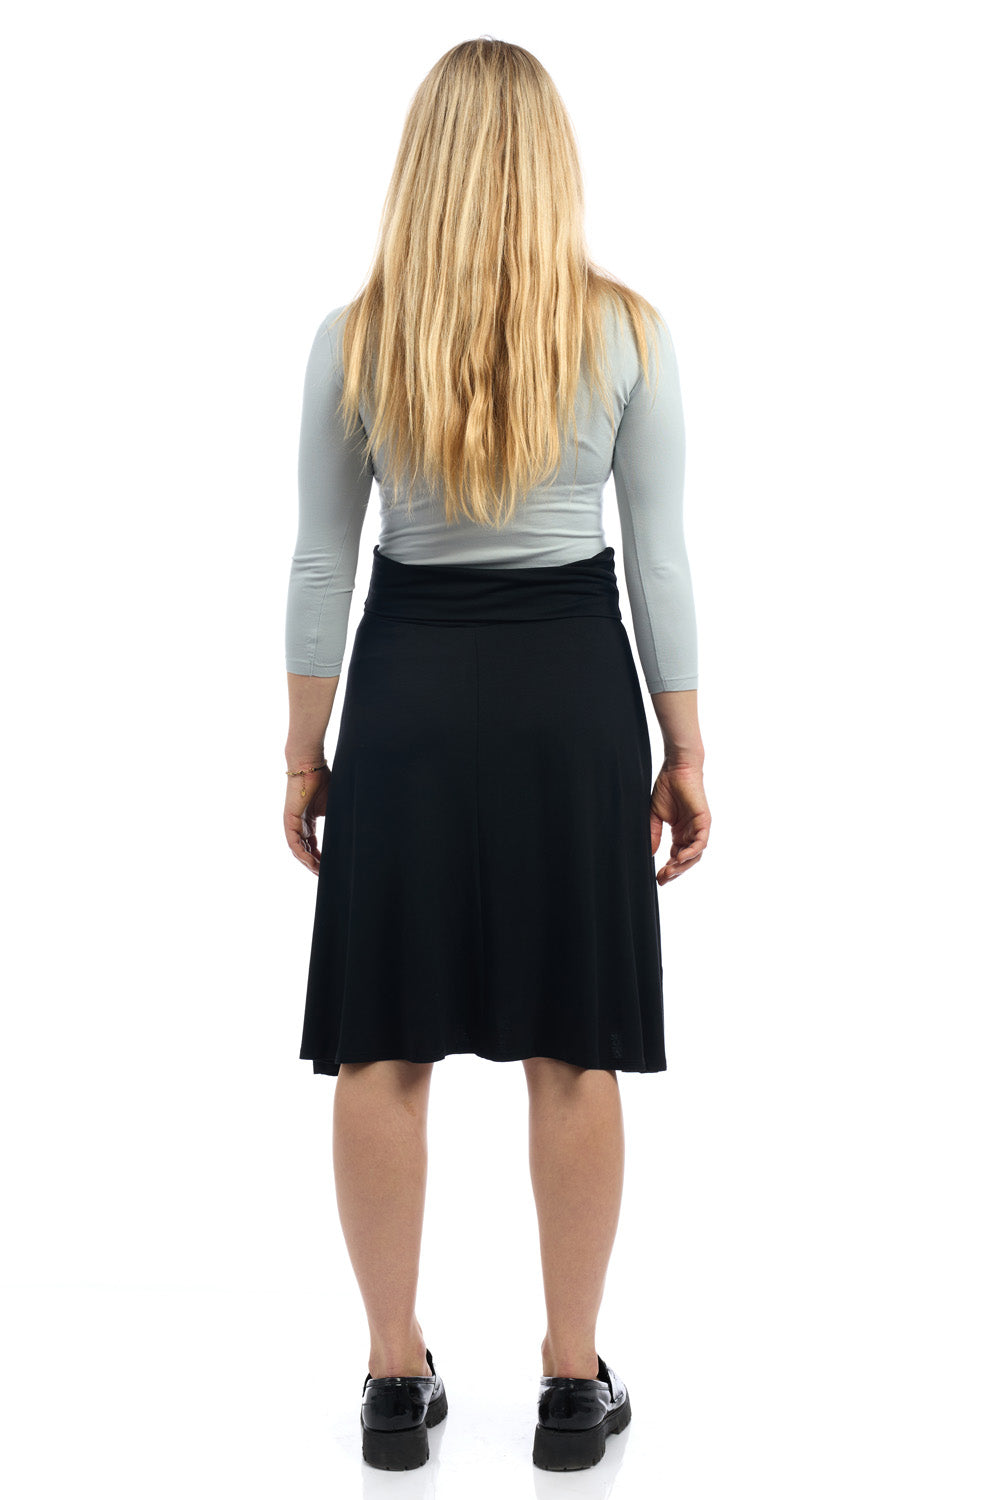 Old Navy inspired fold over flary knee length skater black skirt